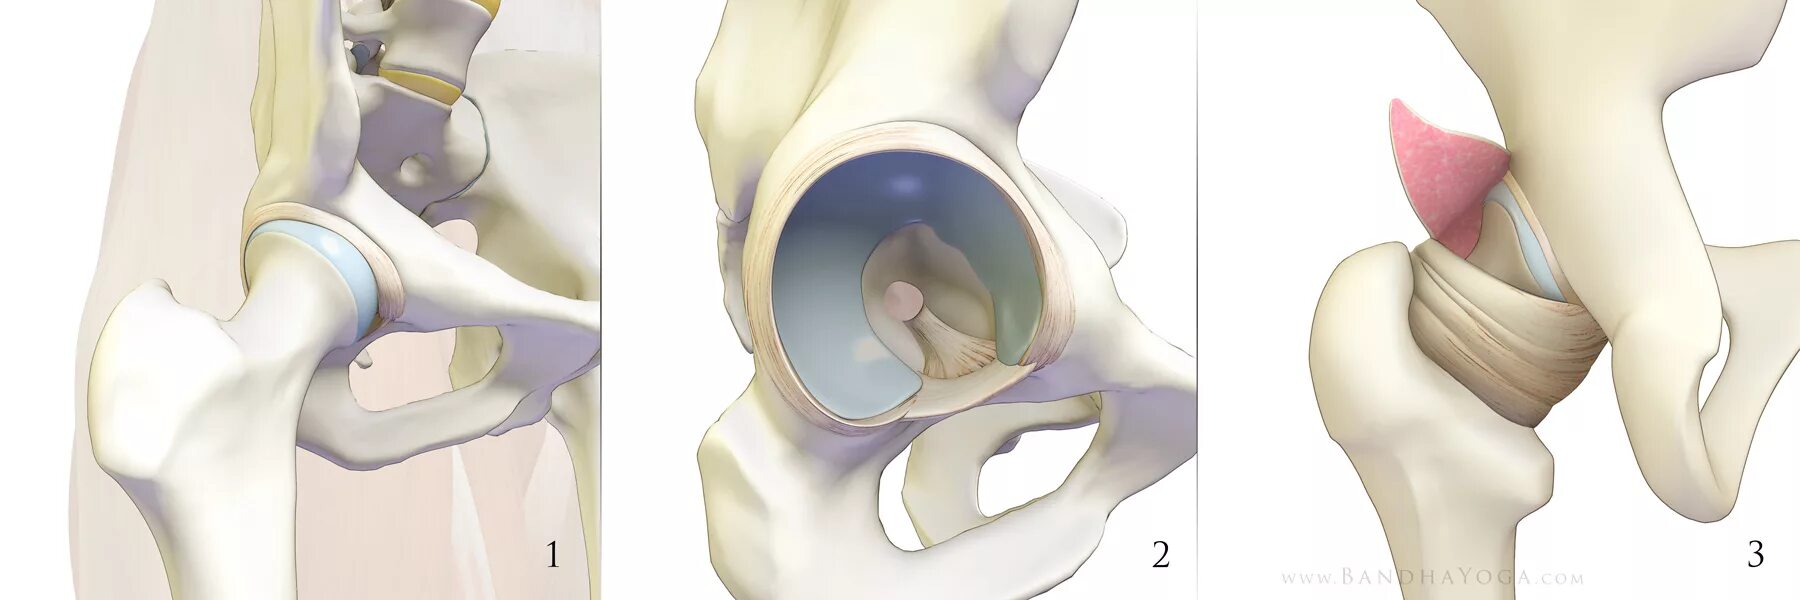 Лунная кость тазобедренного сустава. Суставная губа тазобедренного сустава анатомия. Лабрум тазобедренного сустава. Вертлужная губа тазобедренного сустава анатомия. Правый бедренный сустав